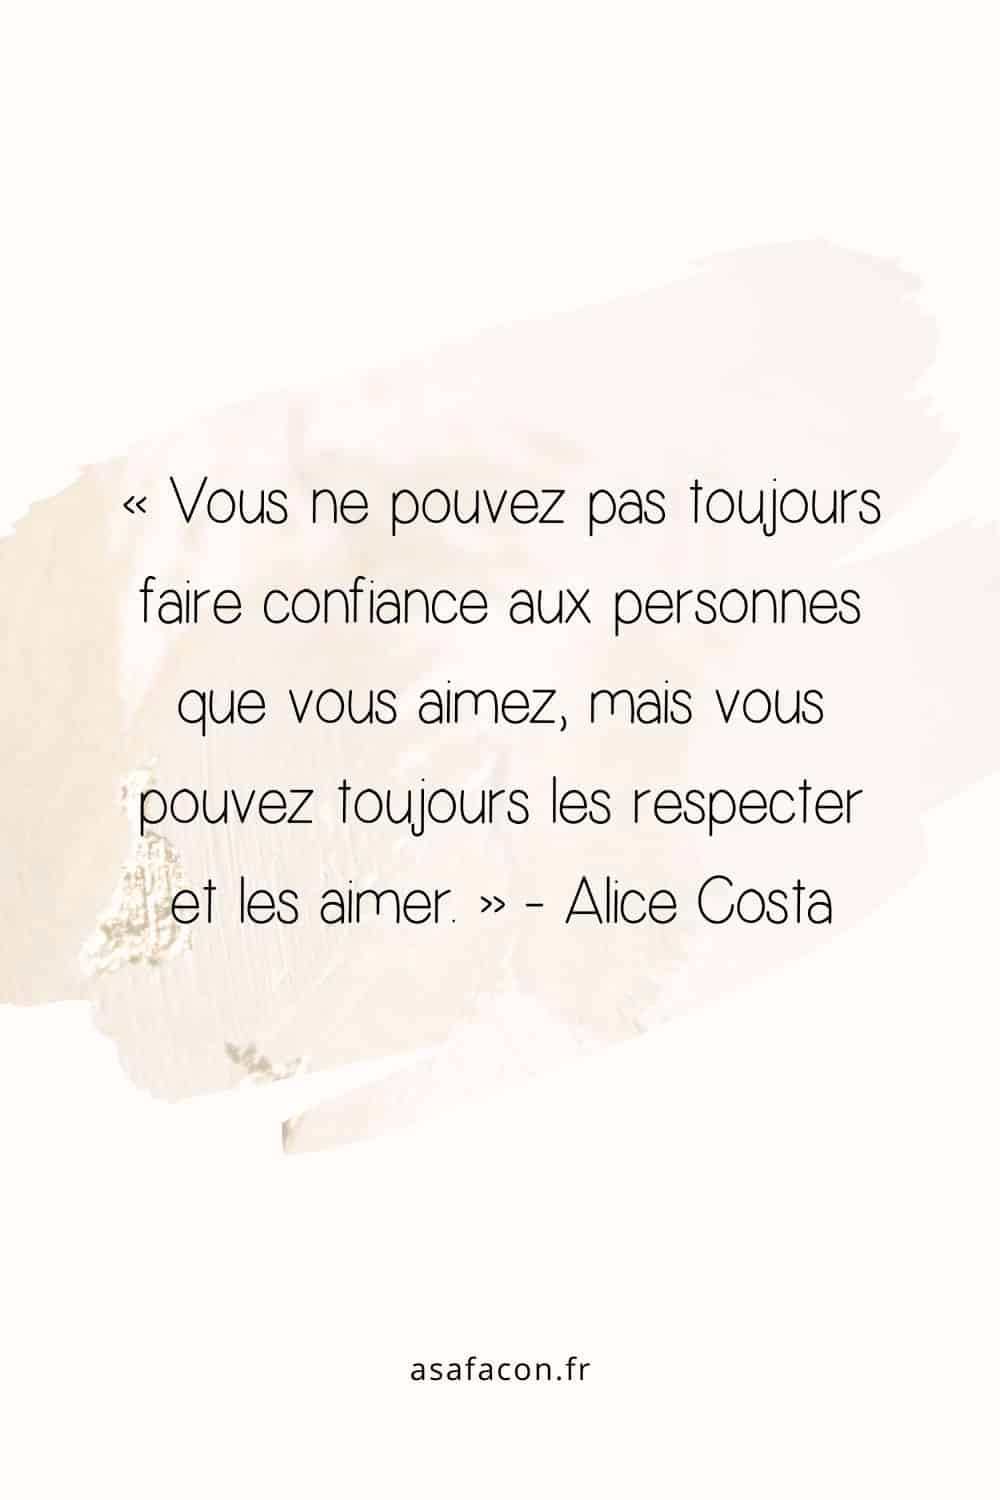 « Vous ne pouvez pas toujours faire confiance aux personnes que vous aimez, mais vous pouvez toujours les respecter et les aimer. » - Alice Costa